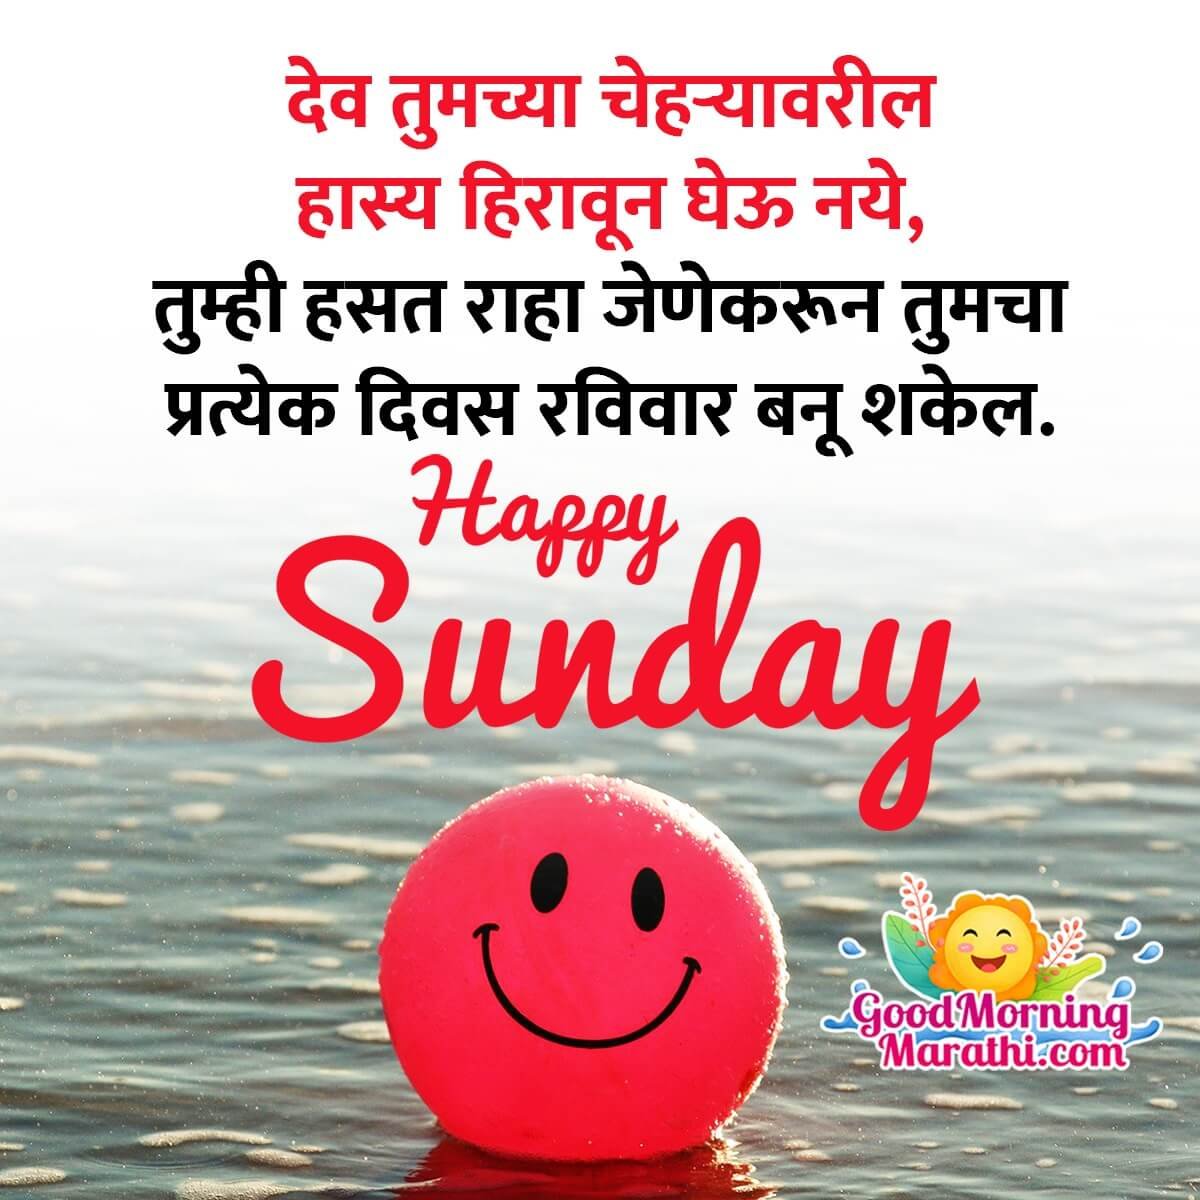 Happy Sunday Message In Marathi